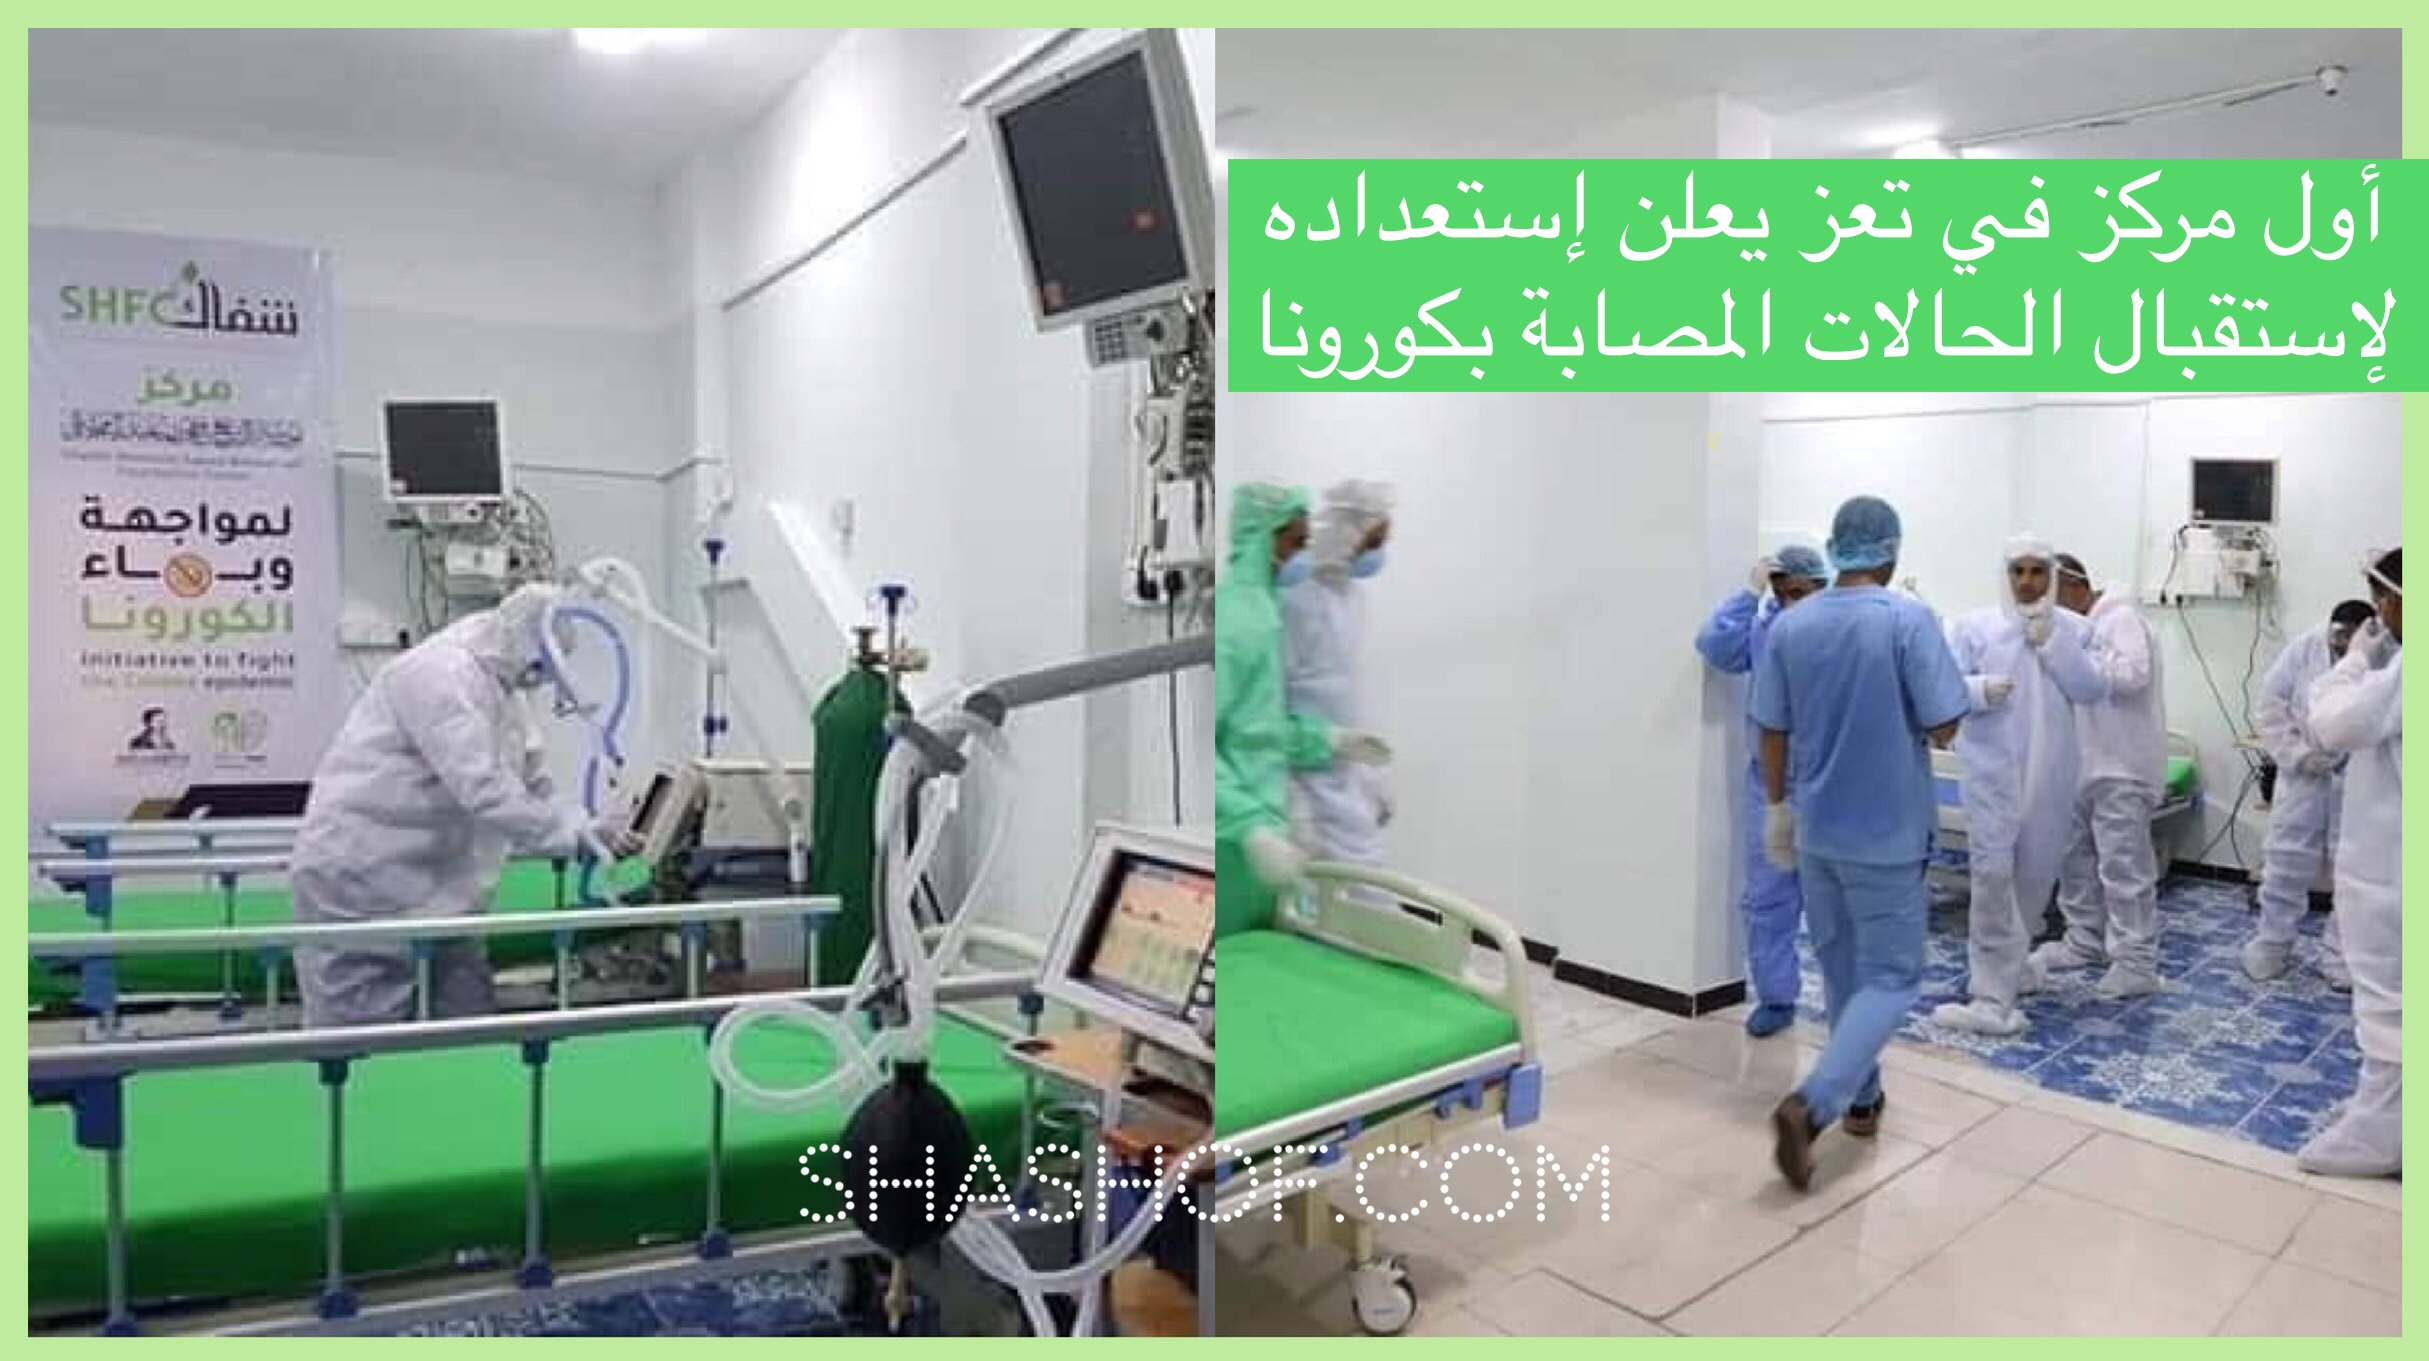 مركز العزل الصحي "شفاك" التابع للشيخ حمود المخلافي يعلن استعداده الكامل لاستقبال حالات كورونا كوفيد-19